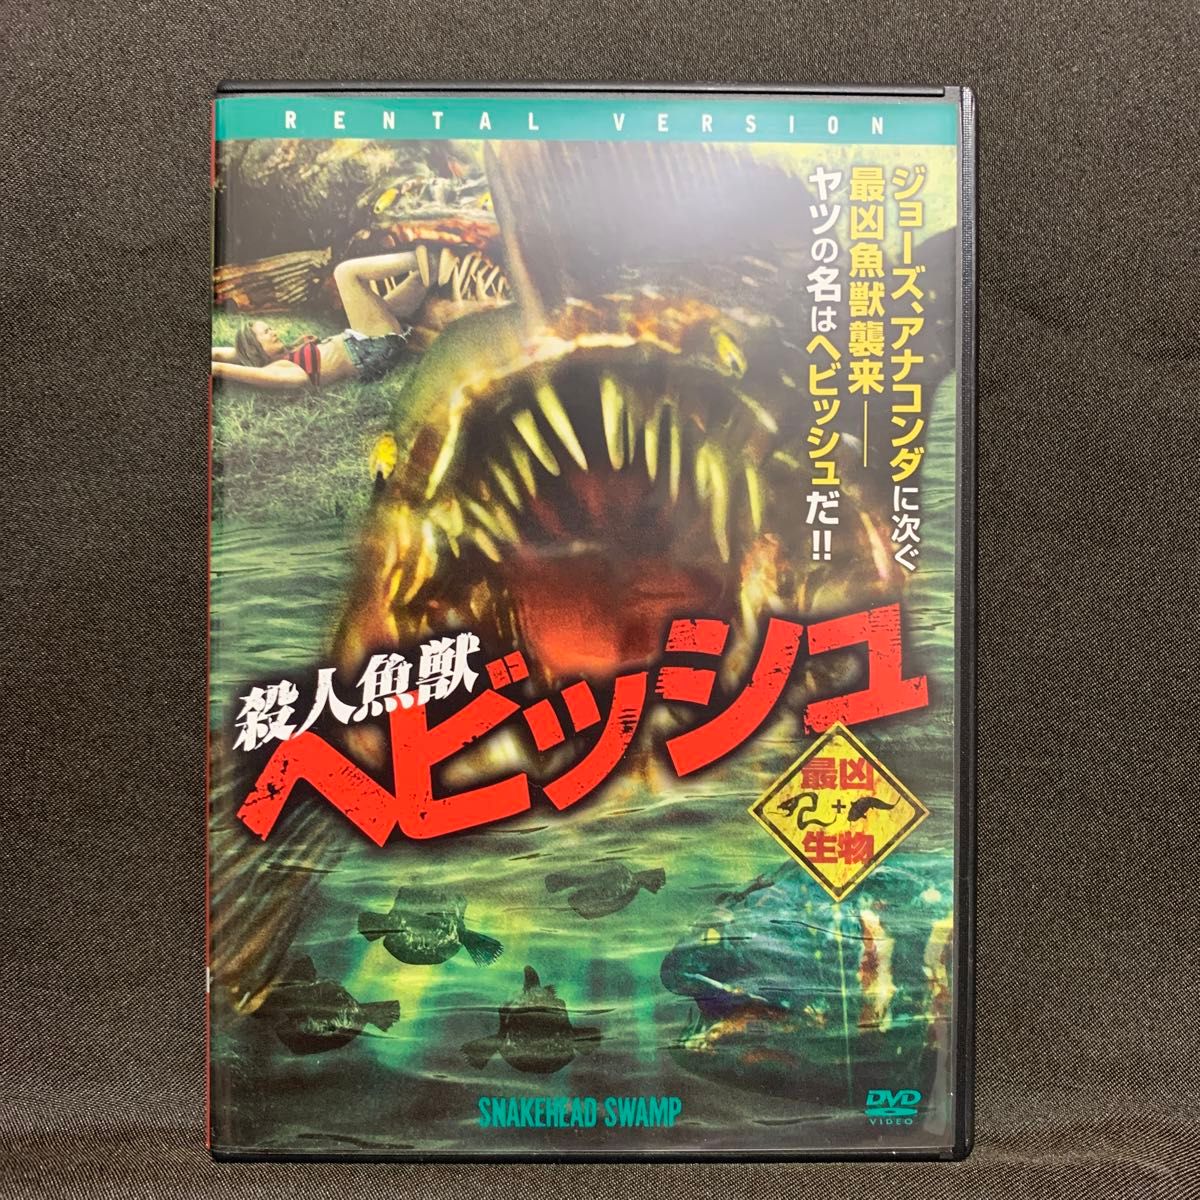 殺人魚獣 ヘビッシュ('14米/映画)【レンタル落ちDVD】